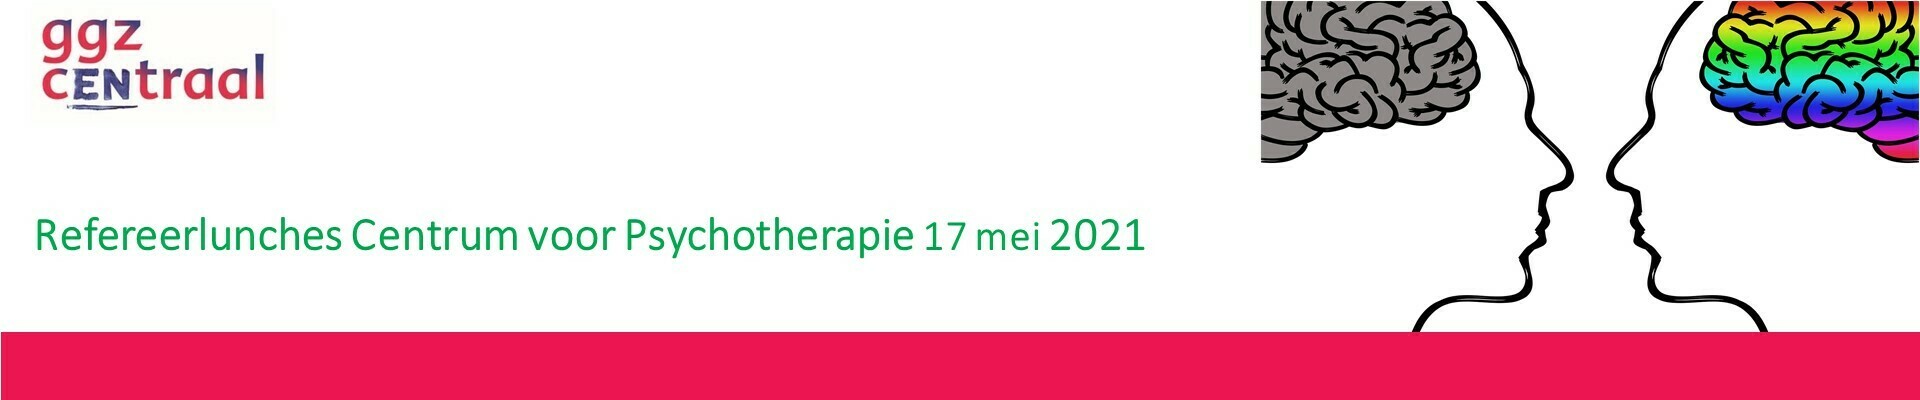 Refereerlunch Centrum voor Psychotherapie 17 mei 2021